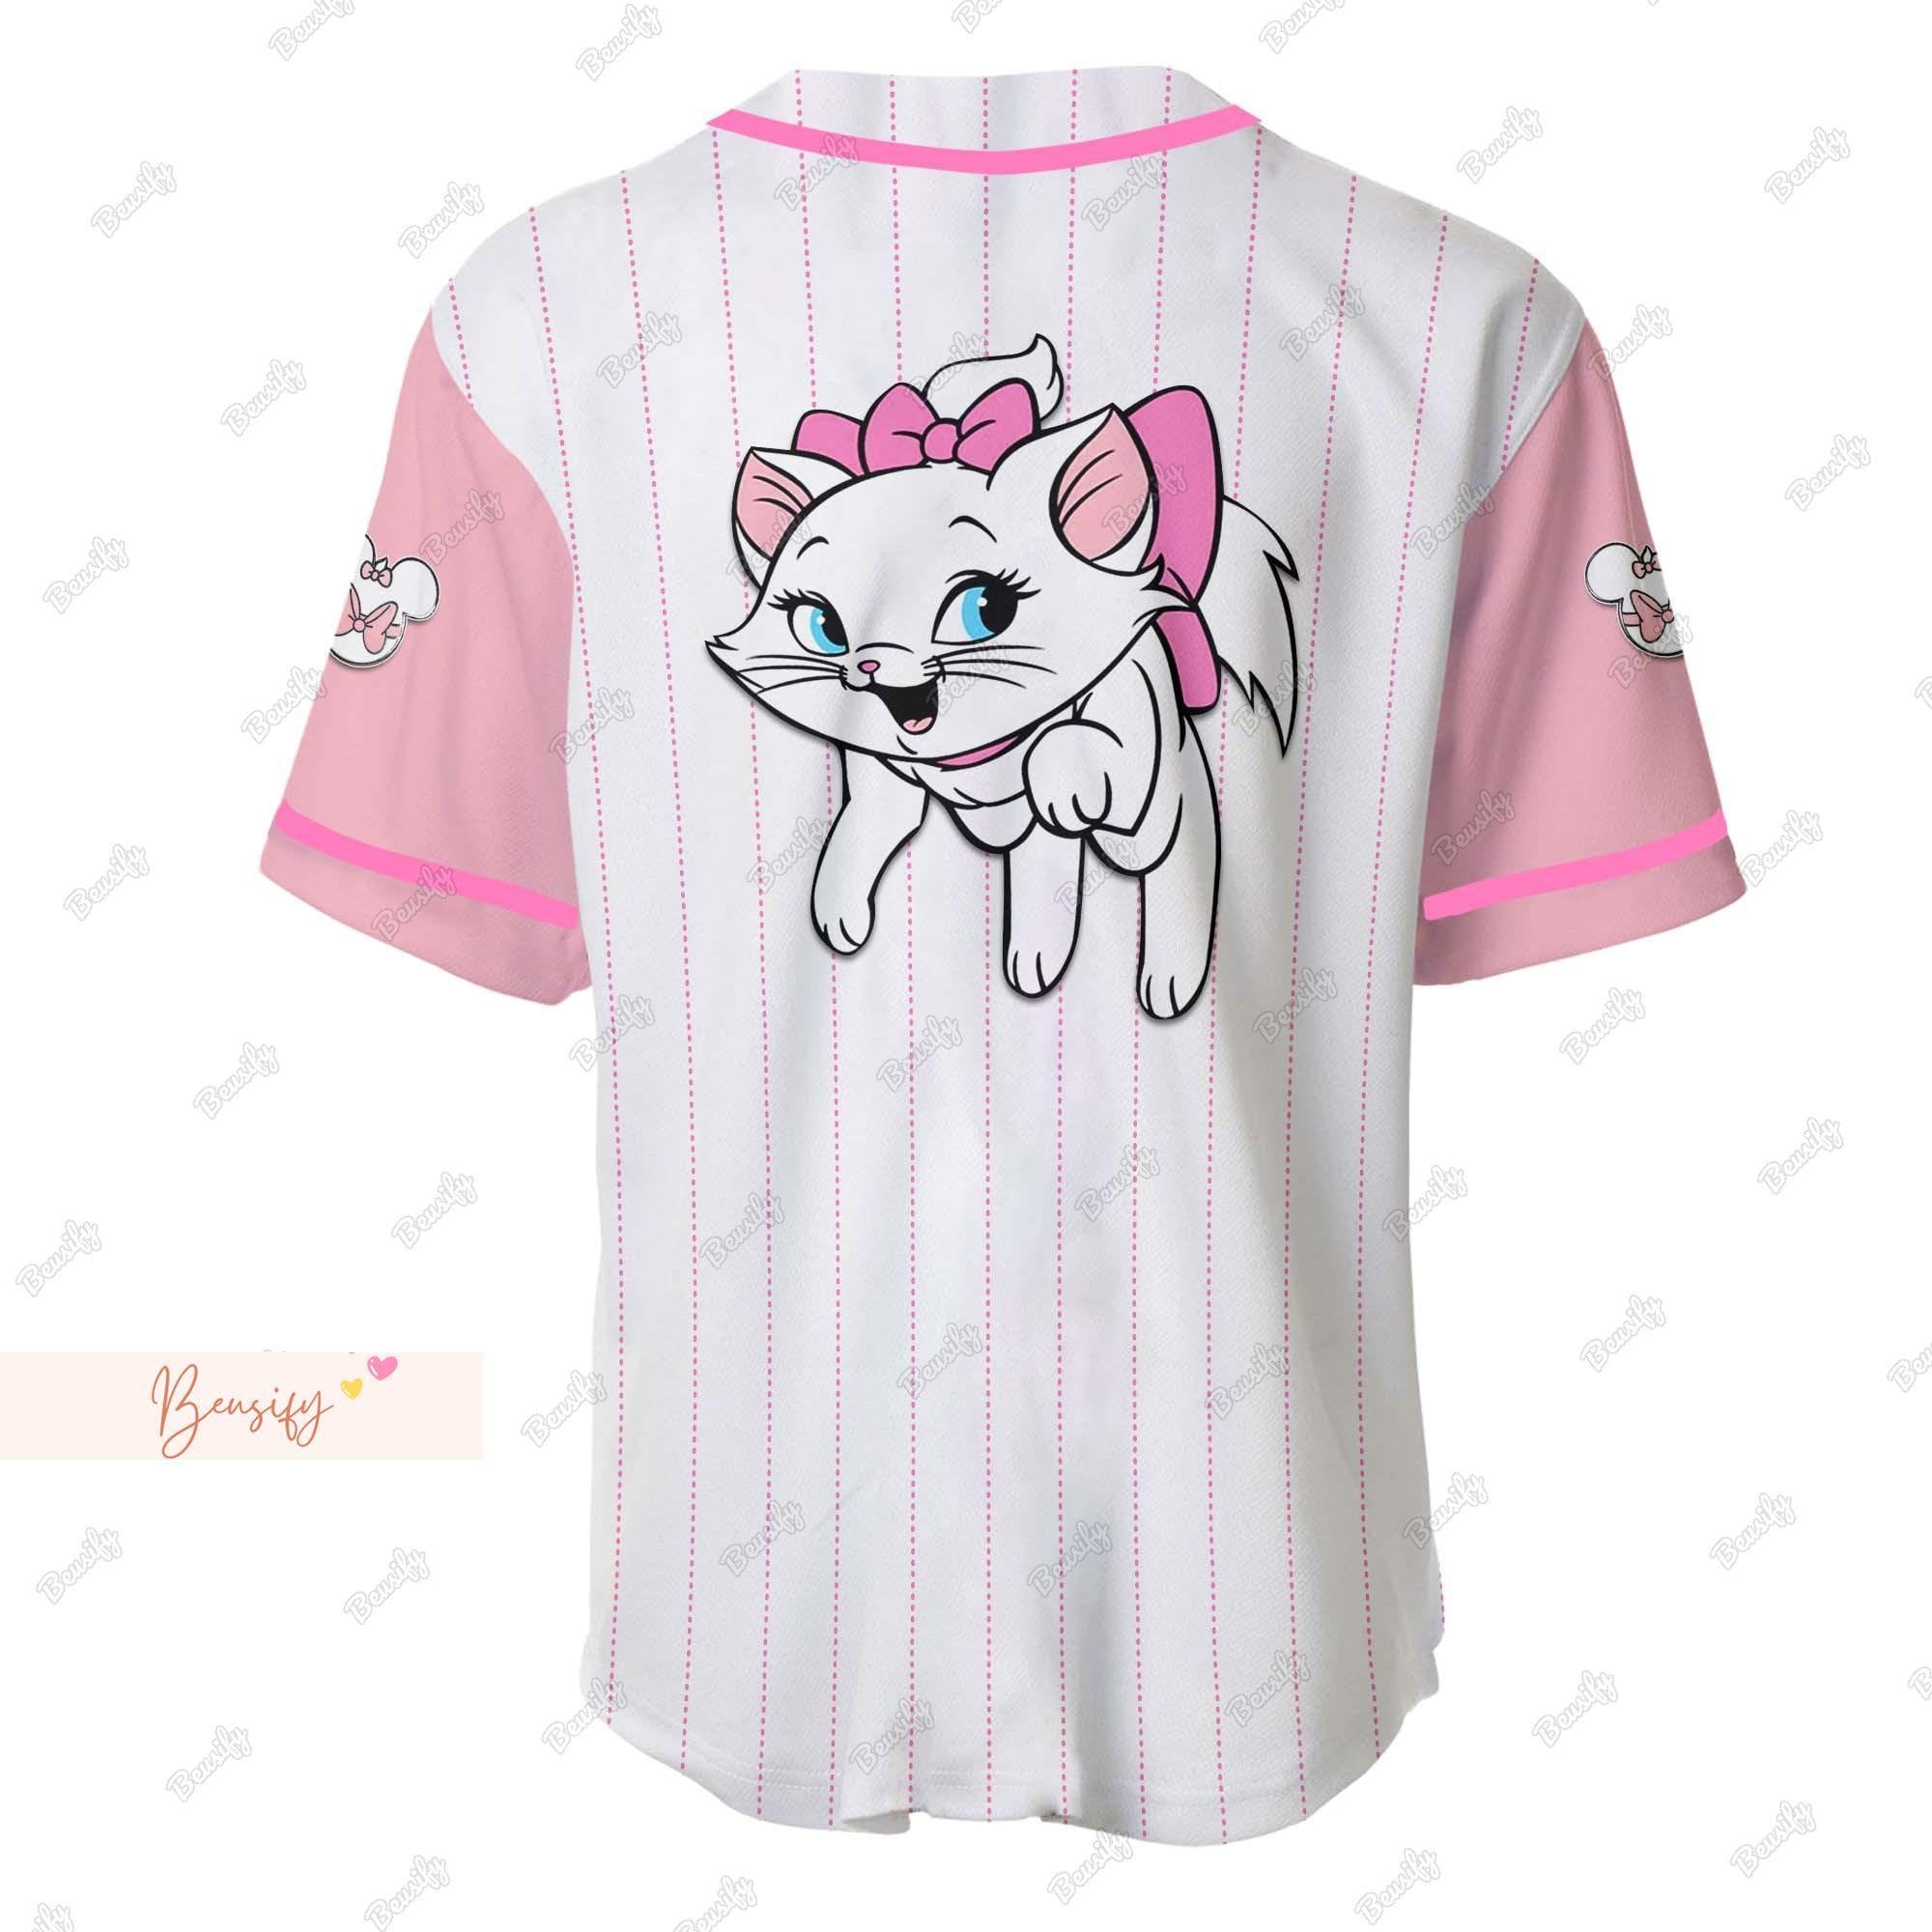 Marie Cat Jersey Shirt, Marie Cat Baseball Jersey, Cute Marie Jersey